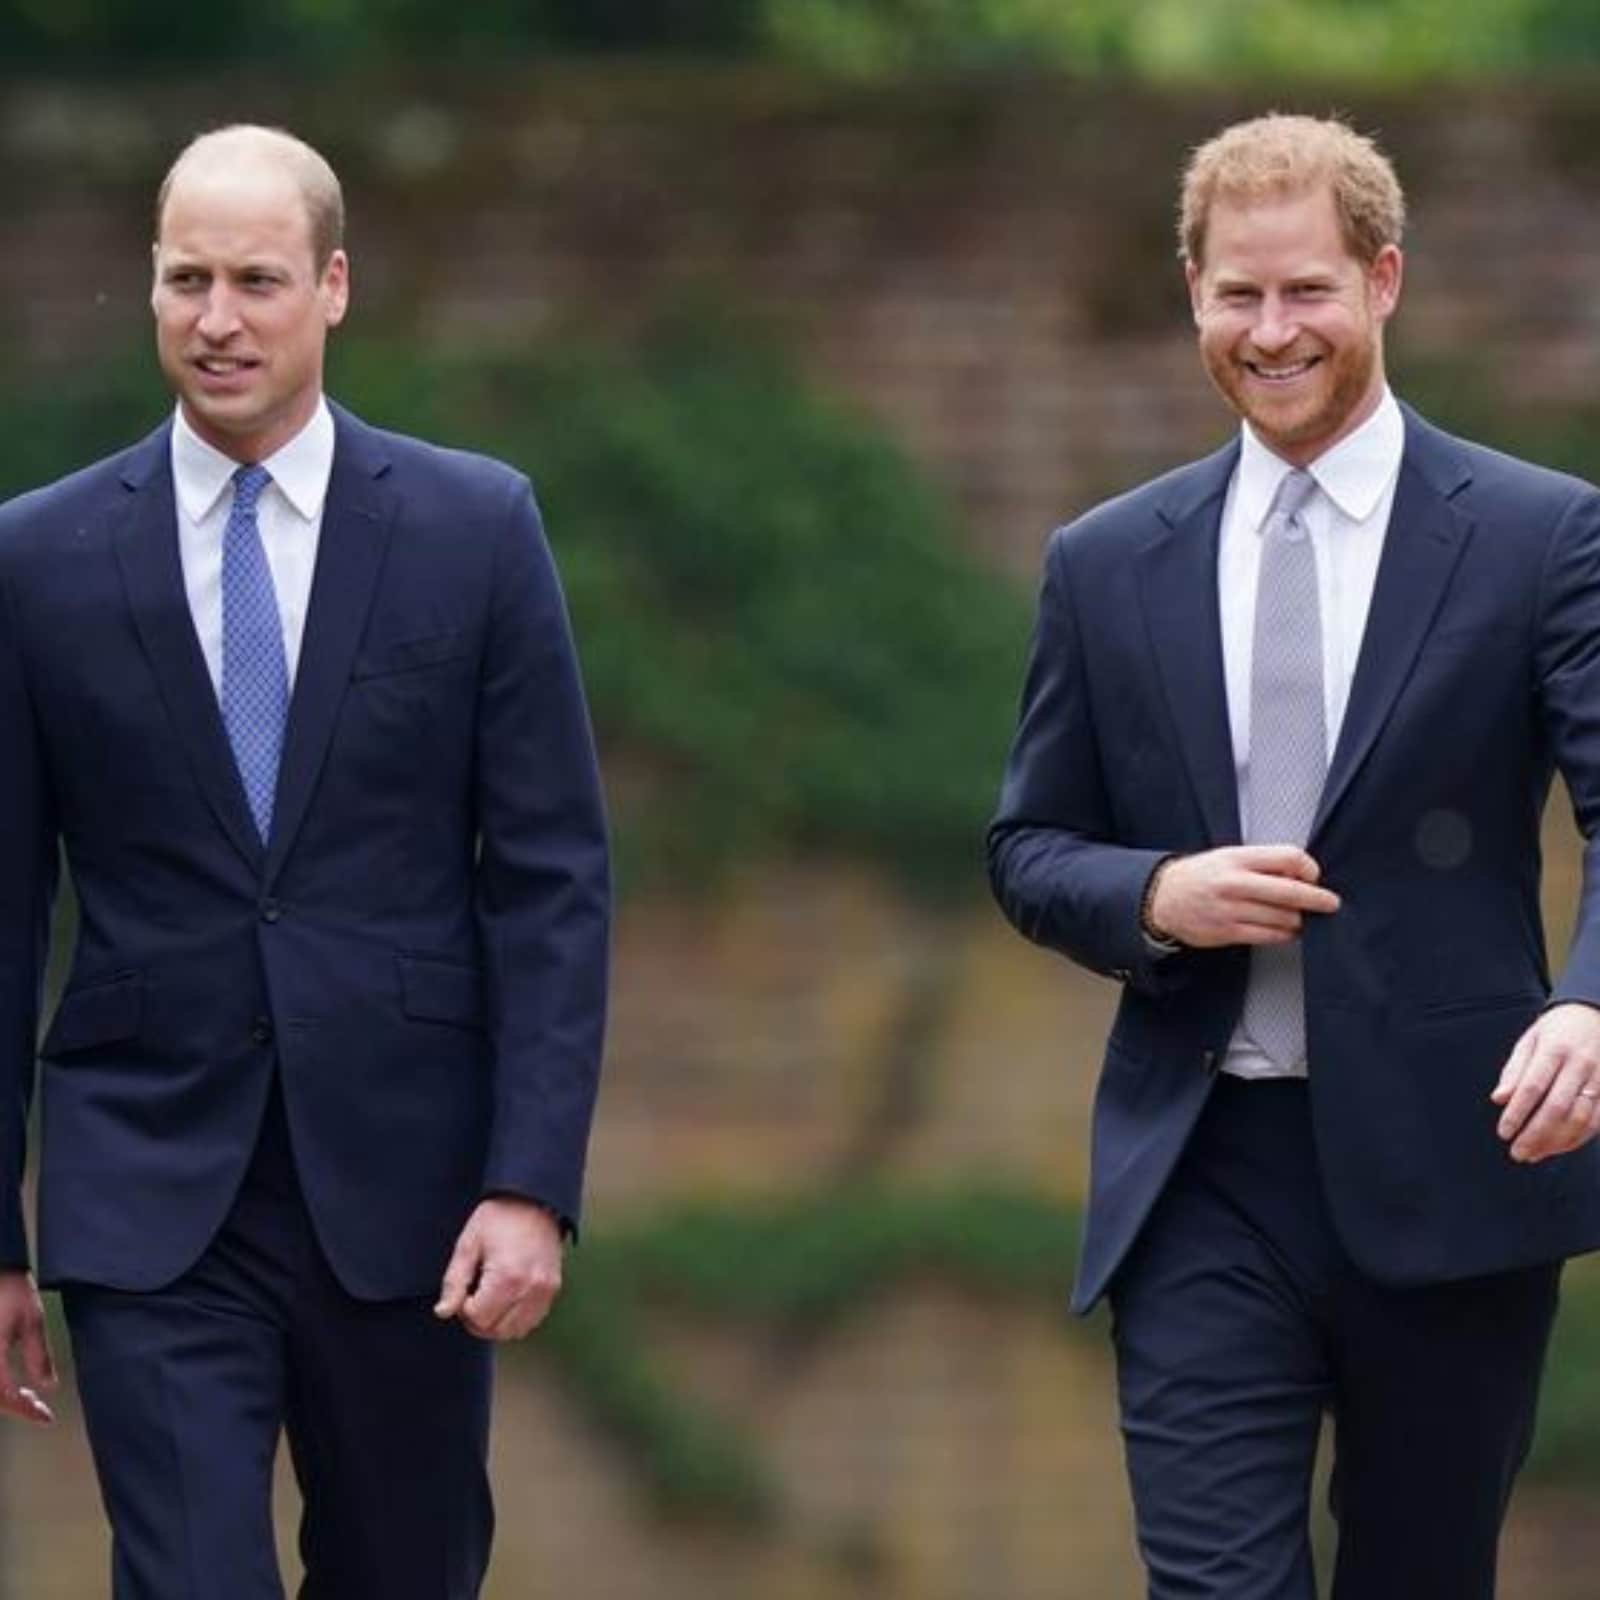 الأمير وليام Prince William يتطلع للسفر إلى الولايات المتحدة لمنافسة الأمير هاري Prince Harry